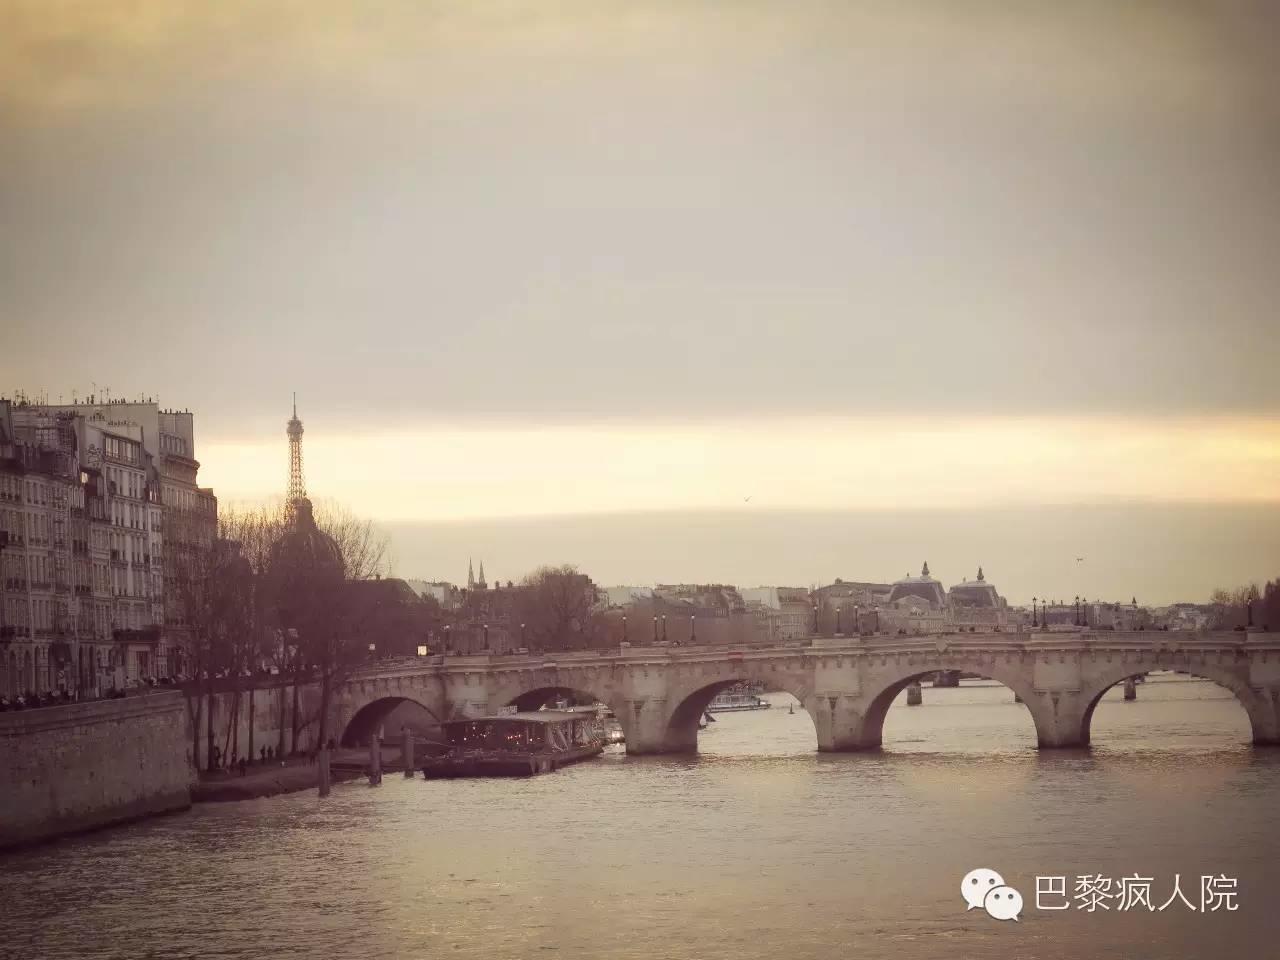 , 微活动｜熙攘的河畔暮光, My Crazy Paris